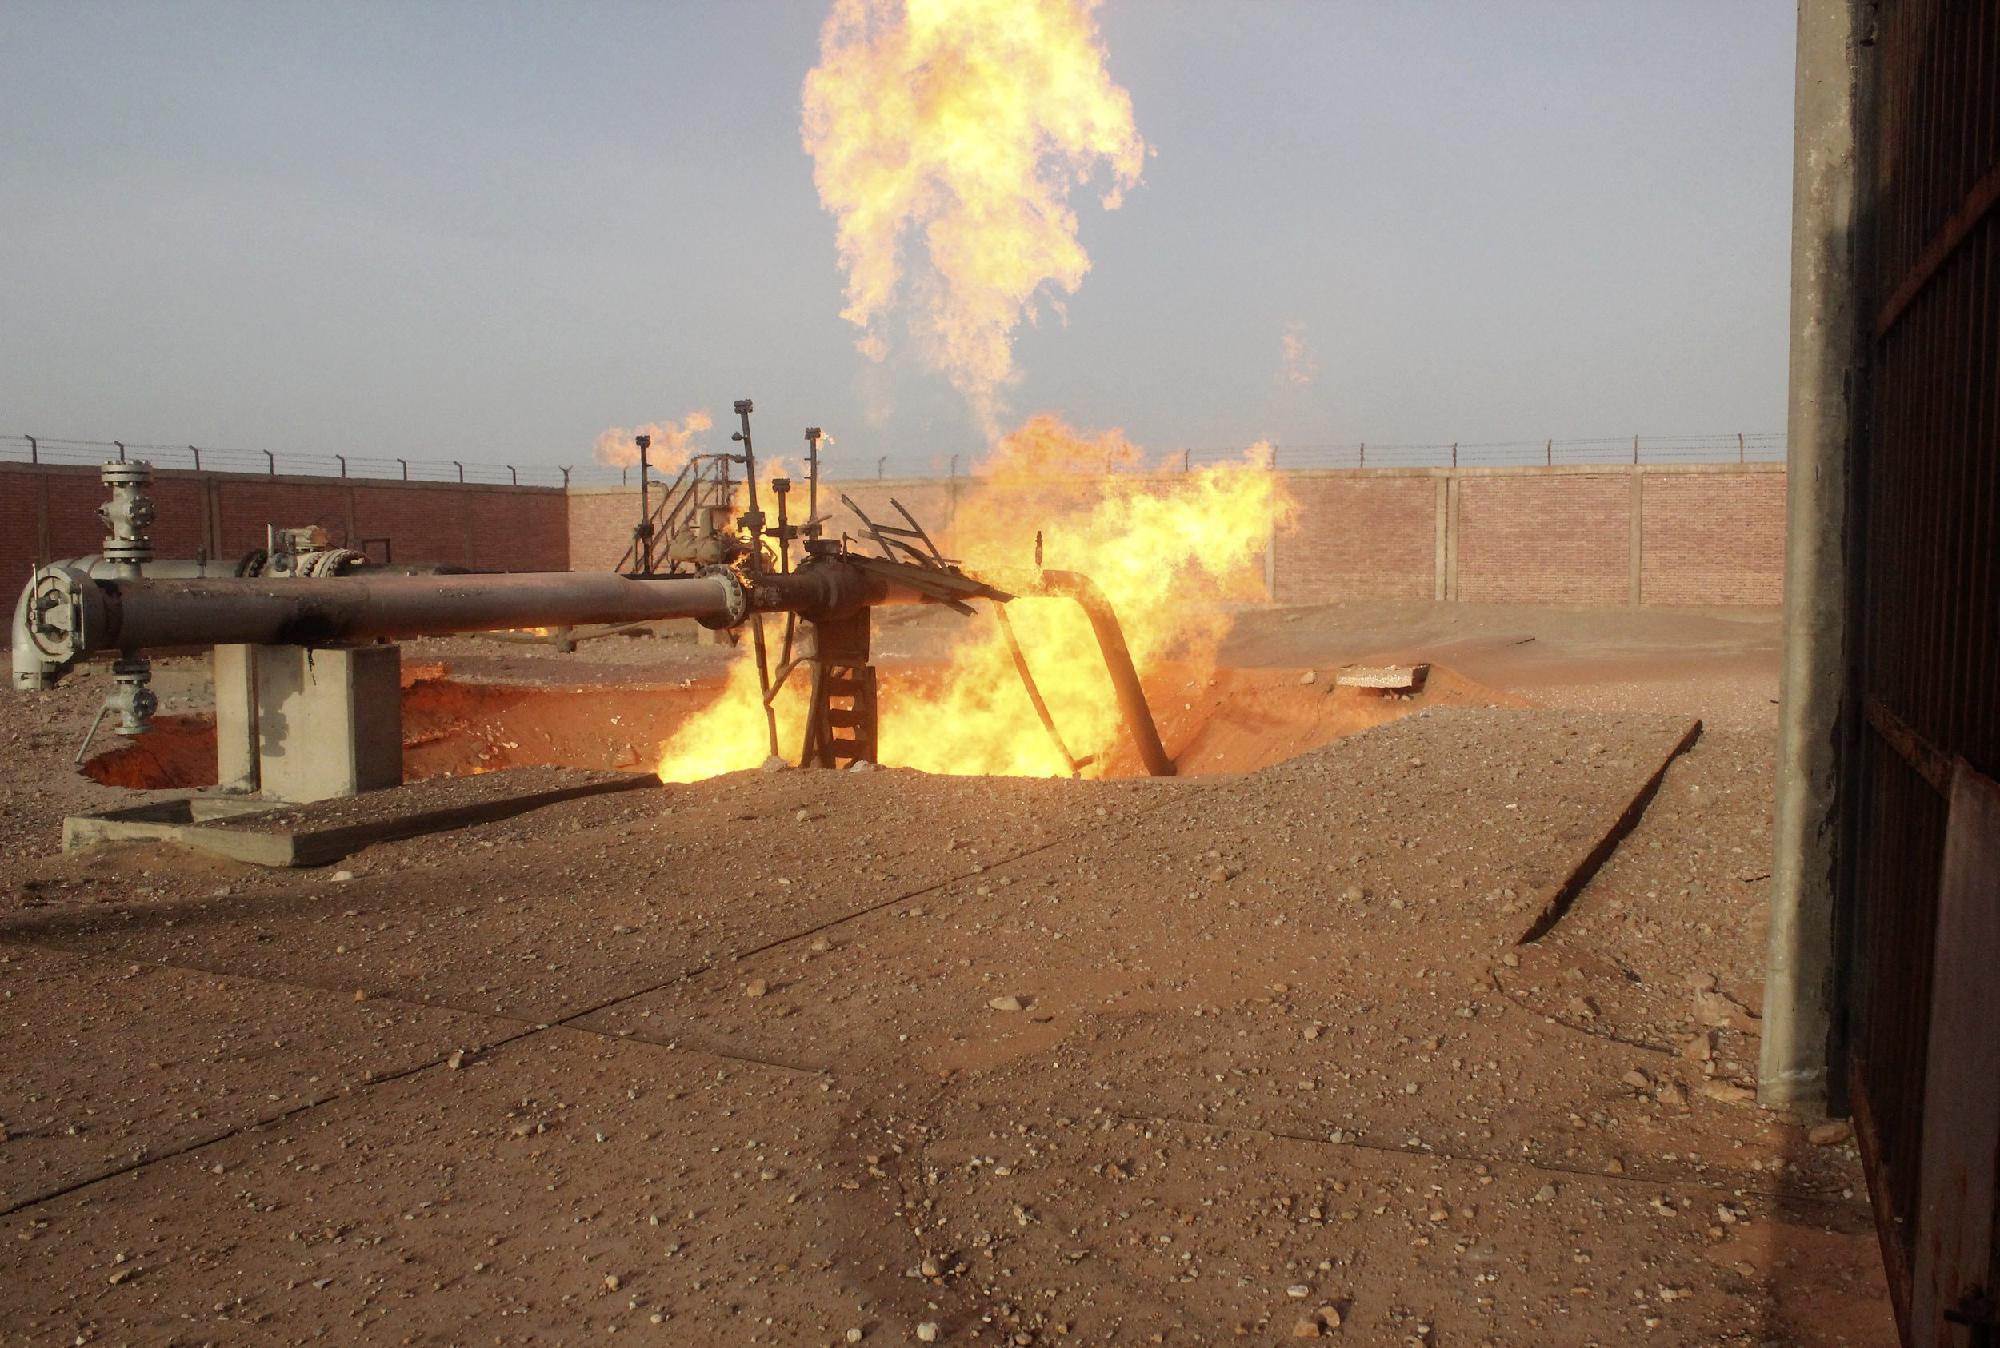 Μεγάλο κοίτασμα φυσικού αερίου εντοπίστηκε στην Αίγυπτο